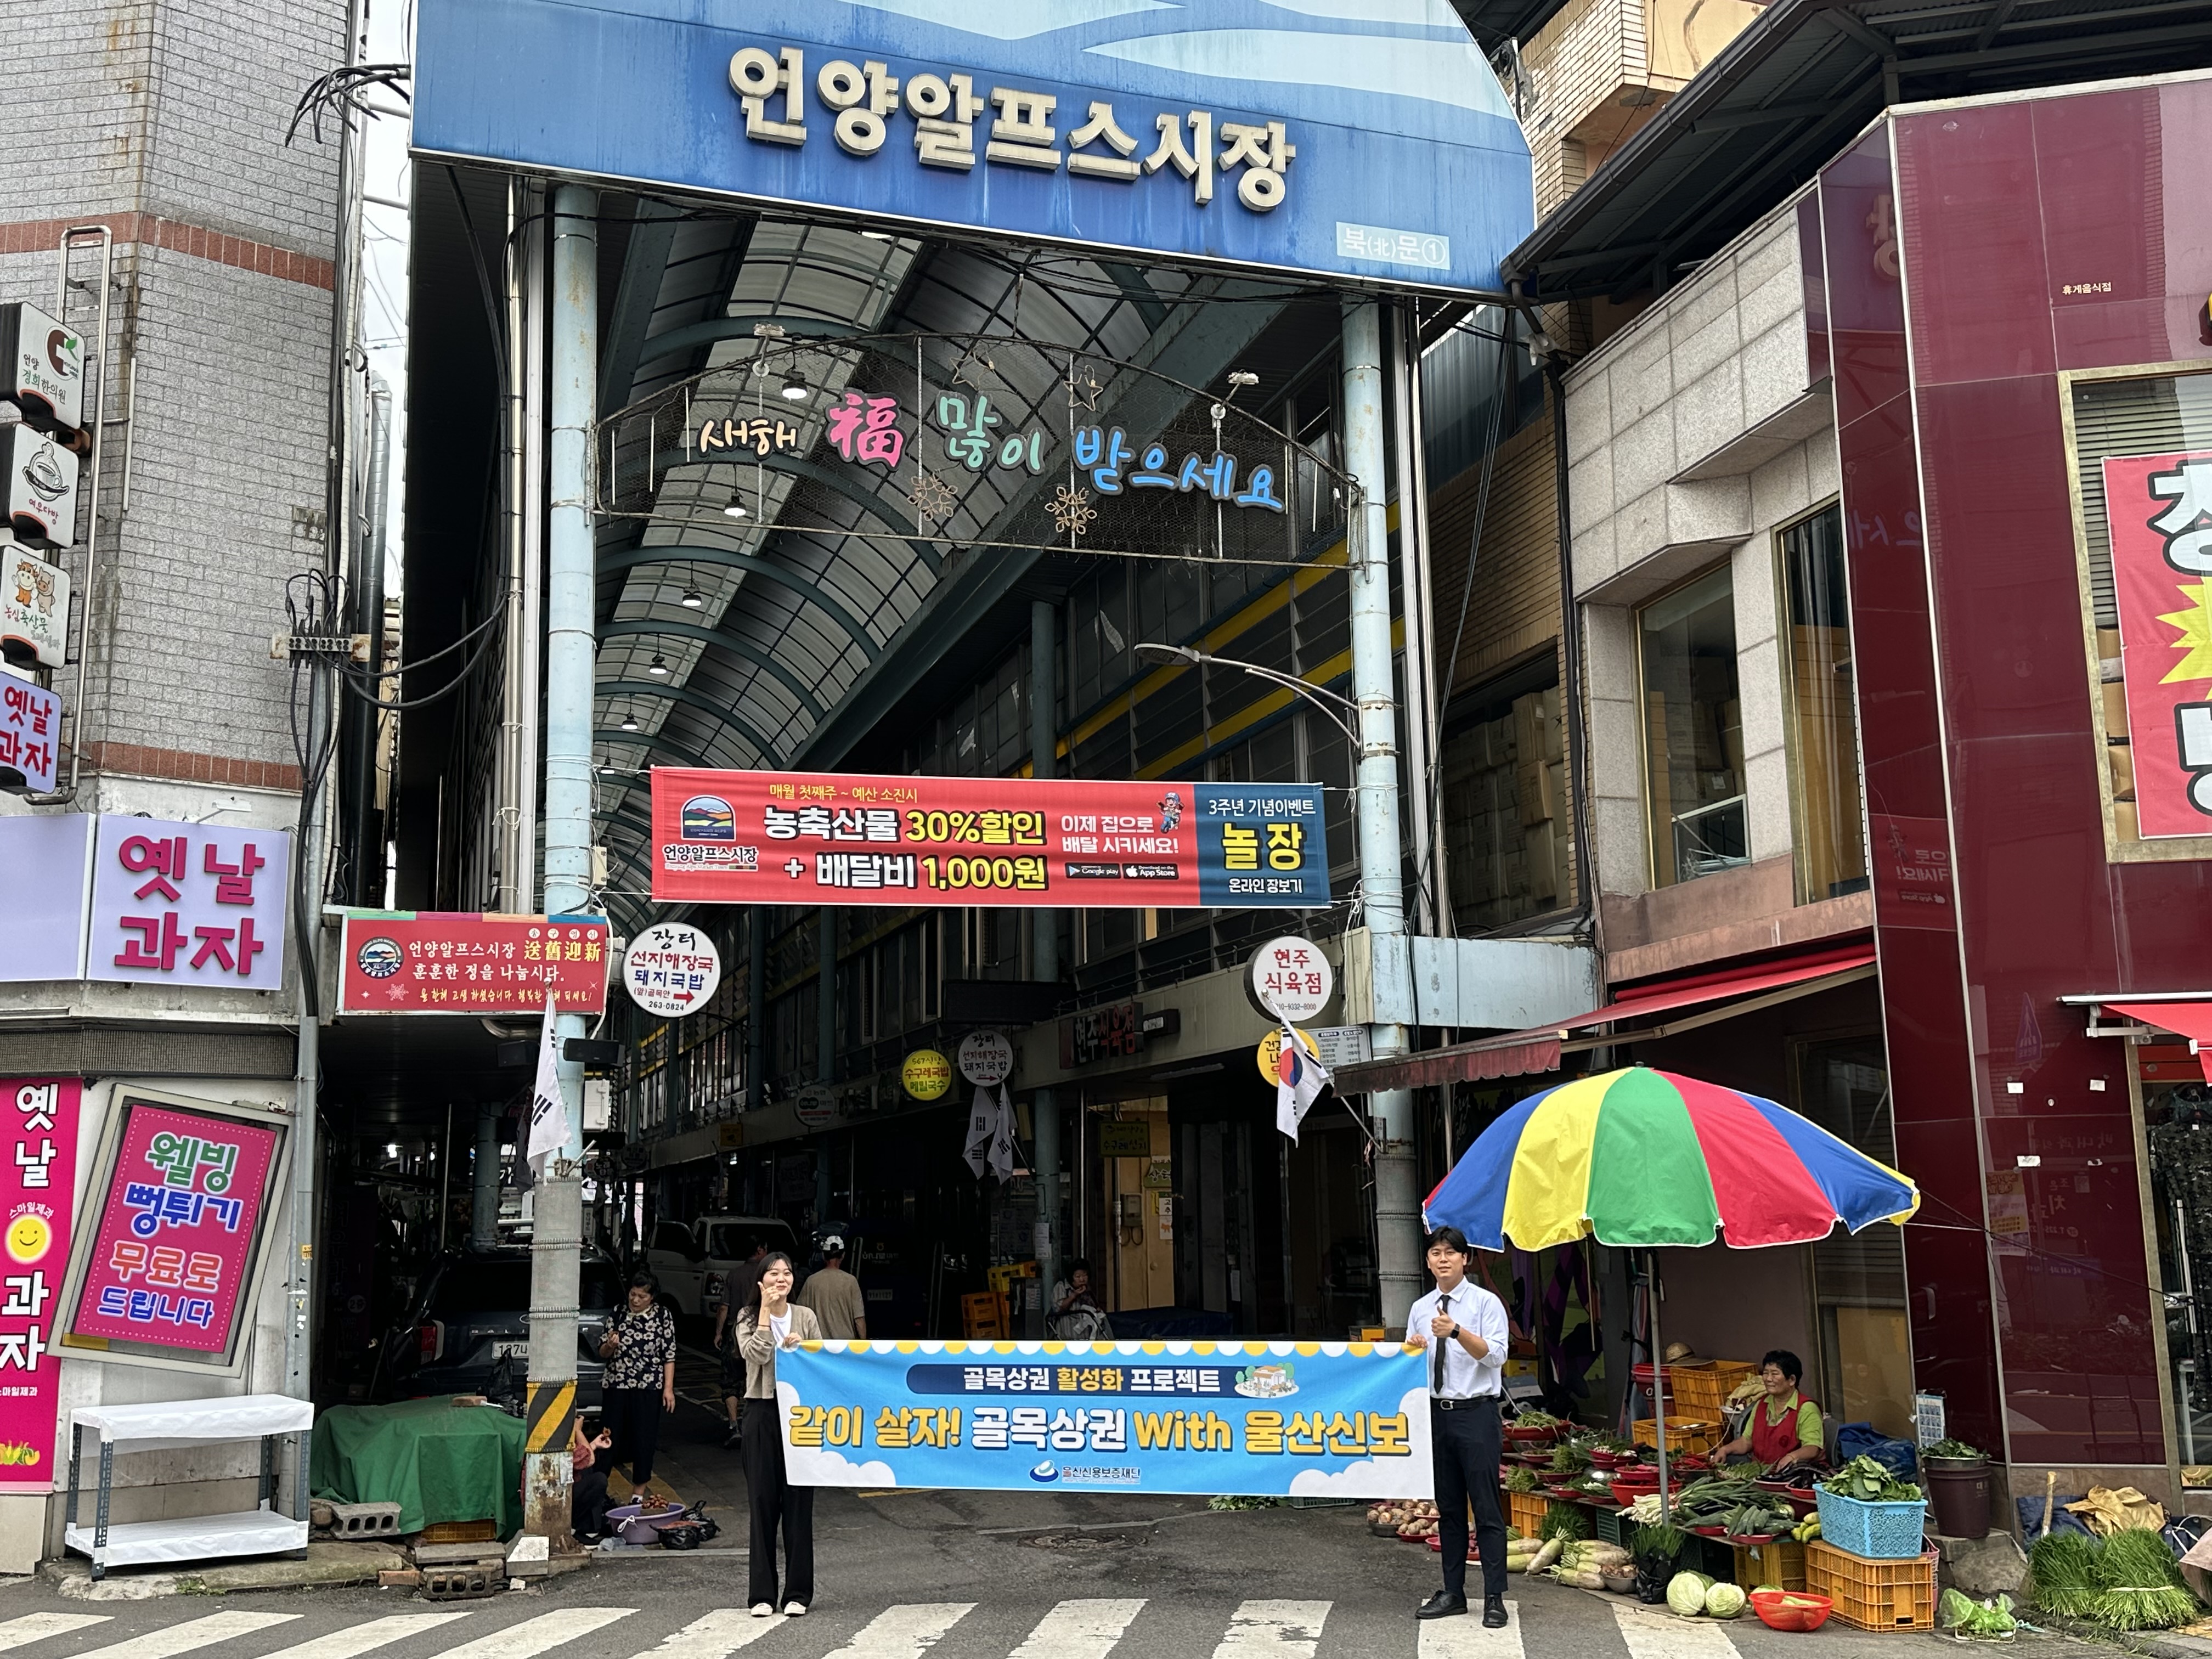 골목상권 활성화 프로젝트, '같이 살자! 골목상권 With 울산신보' 캠페인 참여(서울산지점)